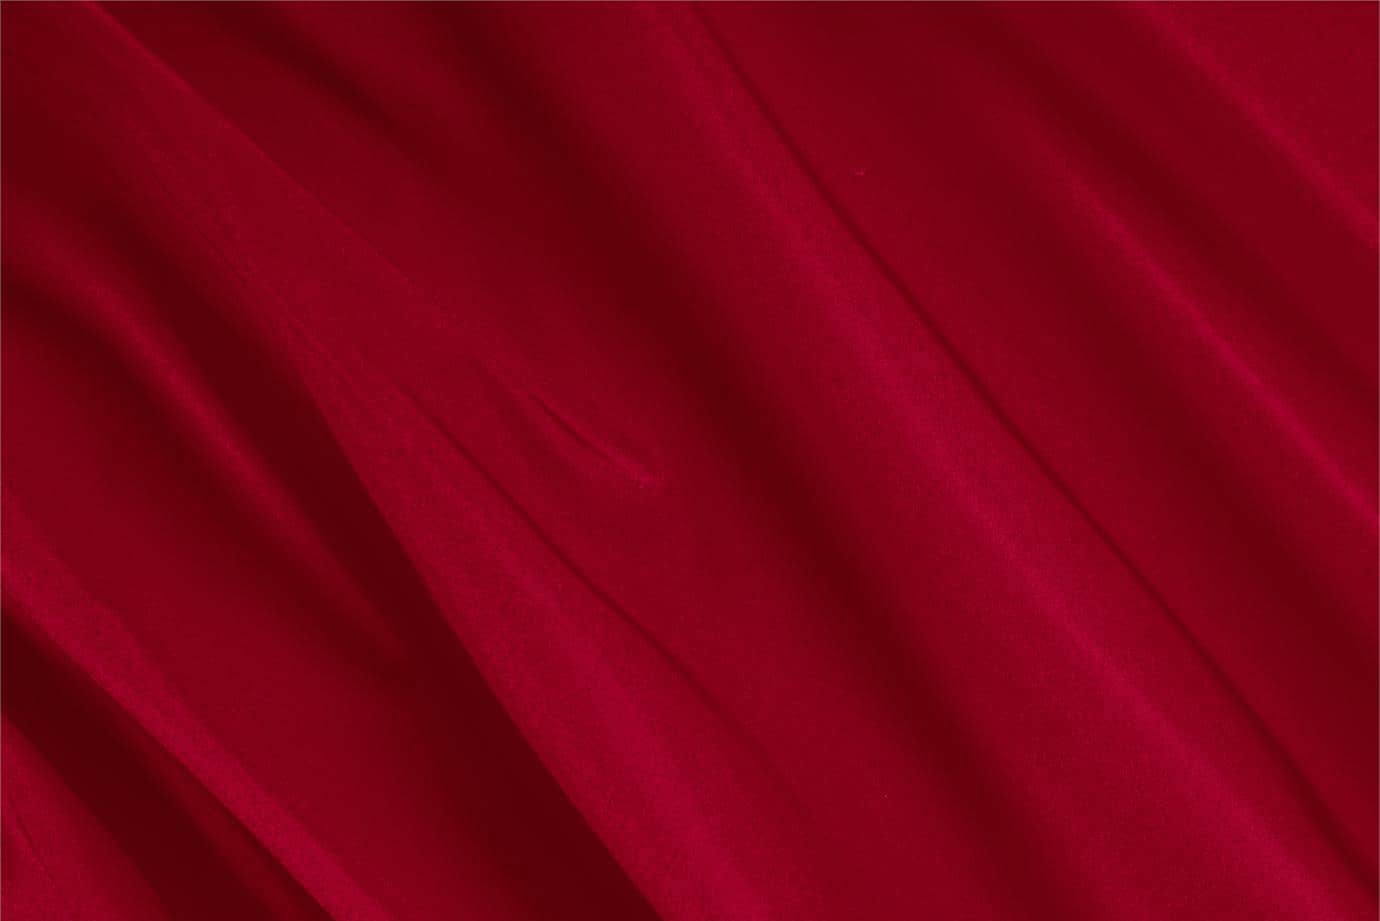 Tissu Radzemire Rouge rubis en Soie pour vêtements